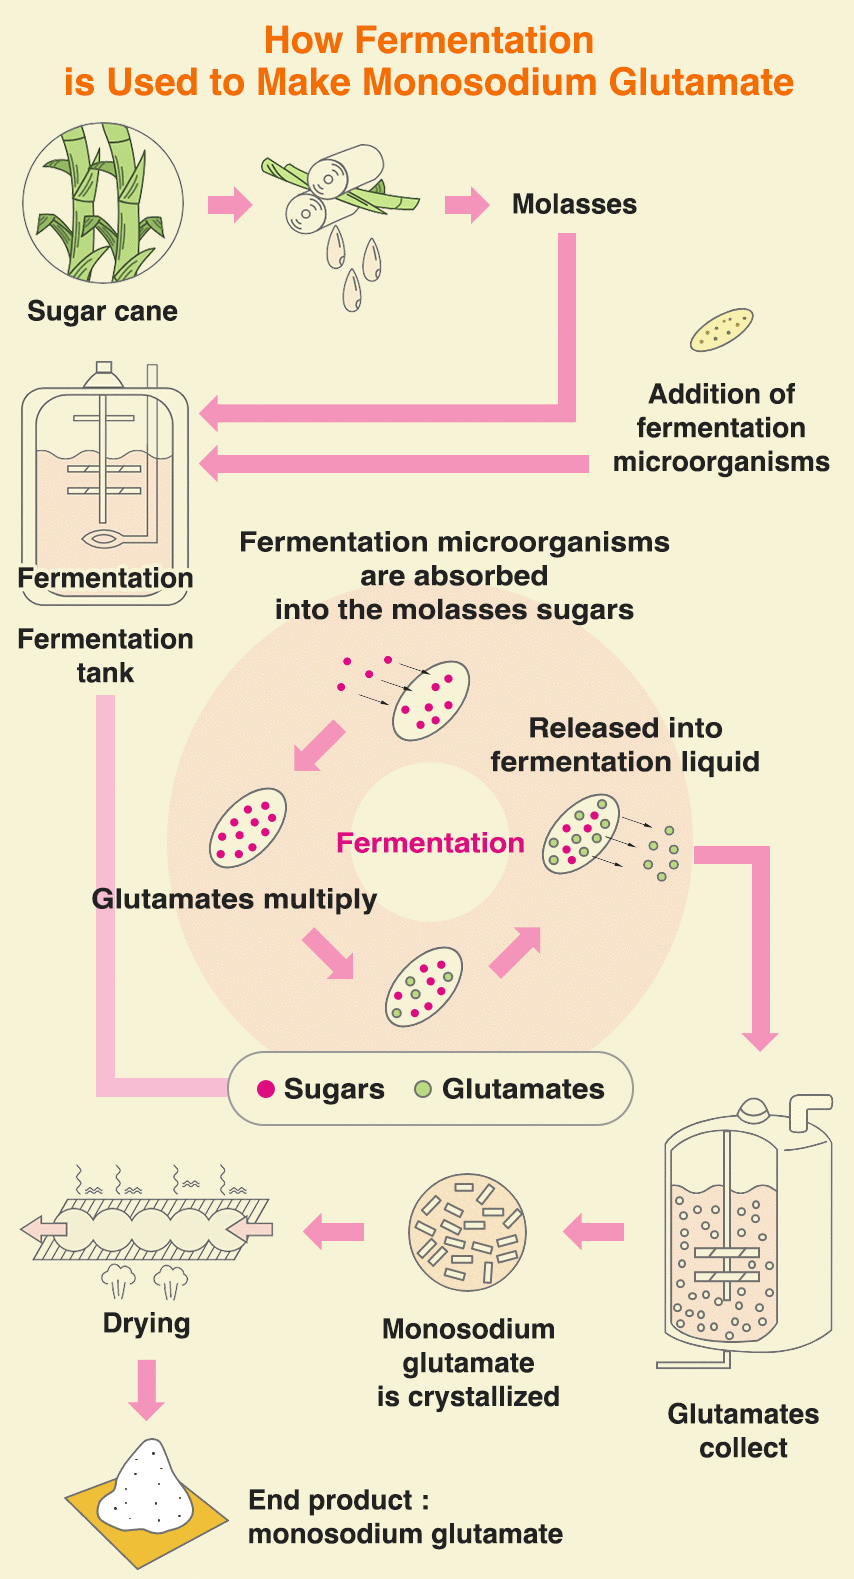 How Fermentation is used to make monosodium glutamate